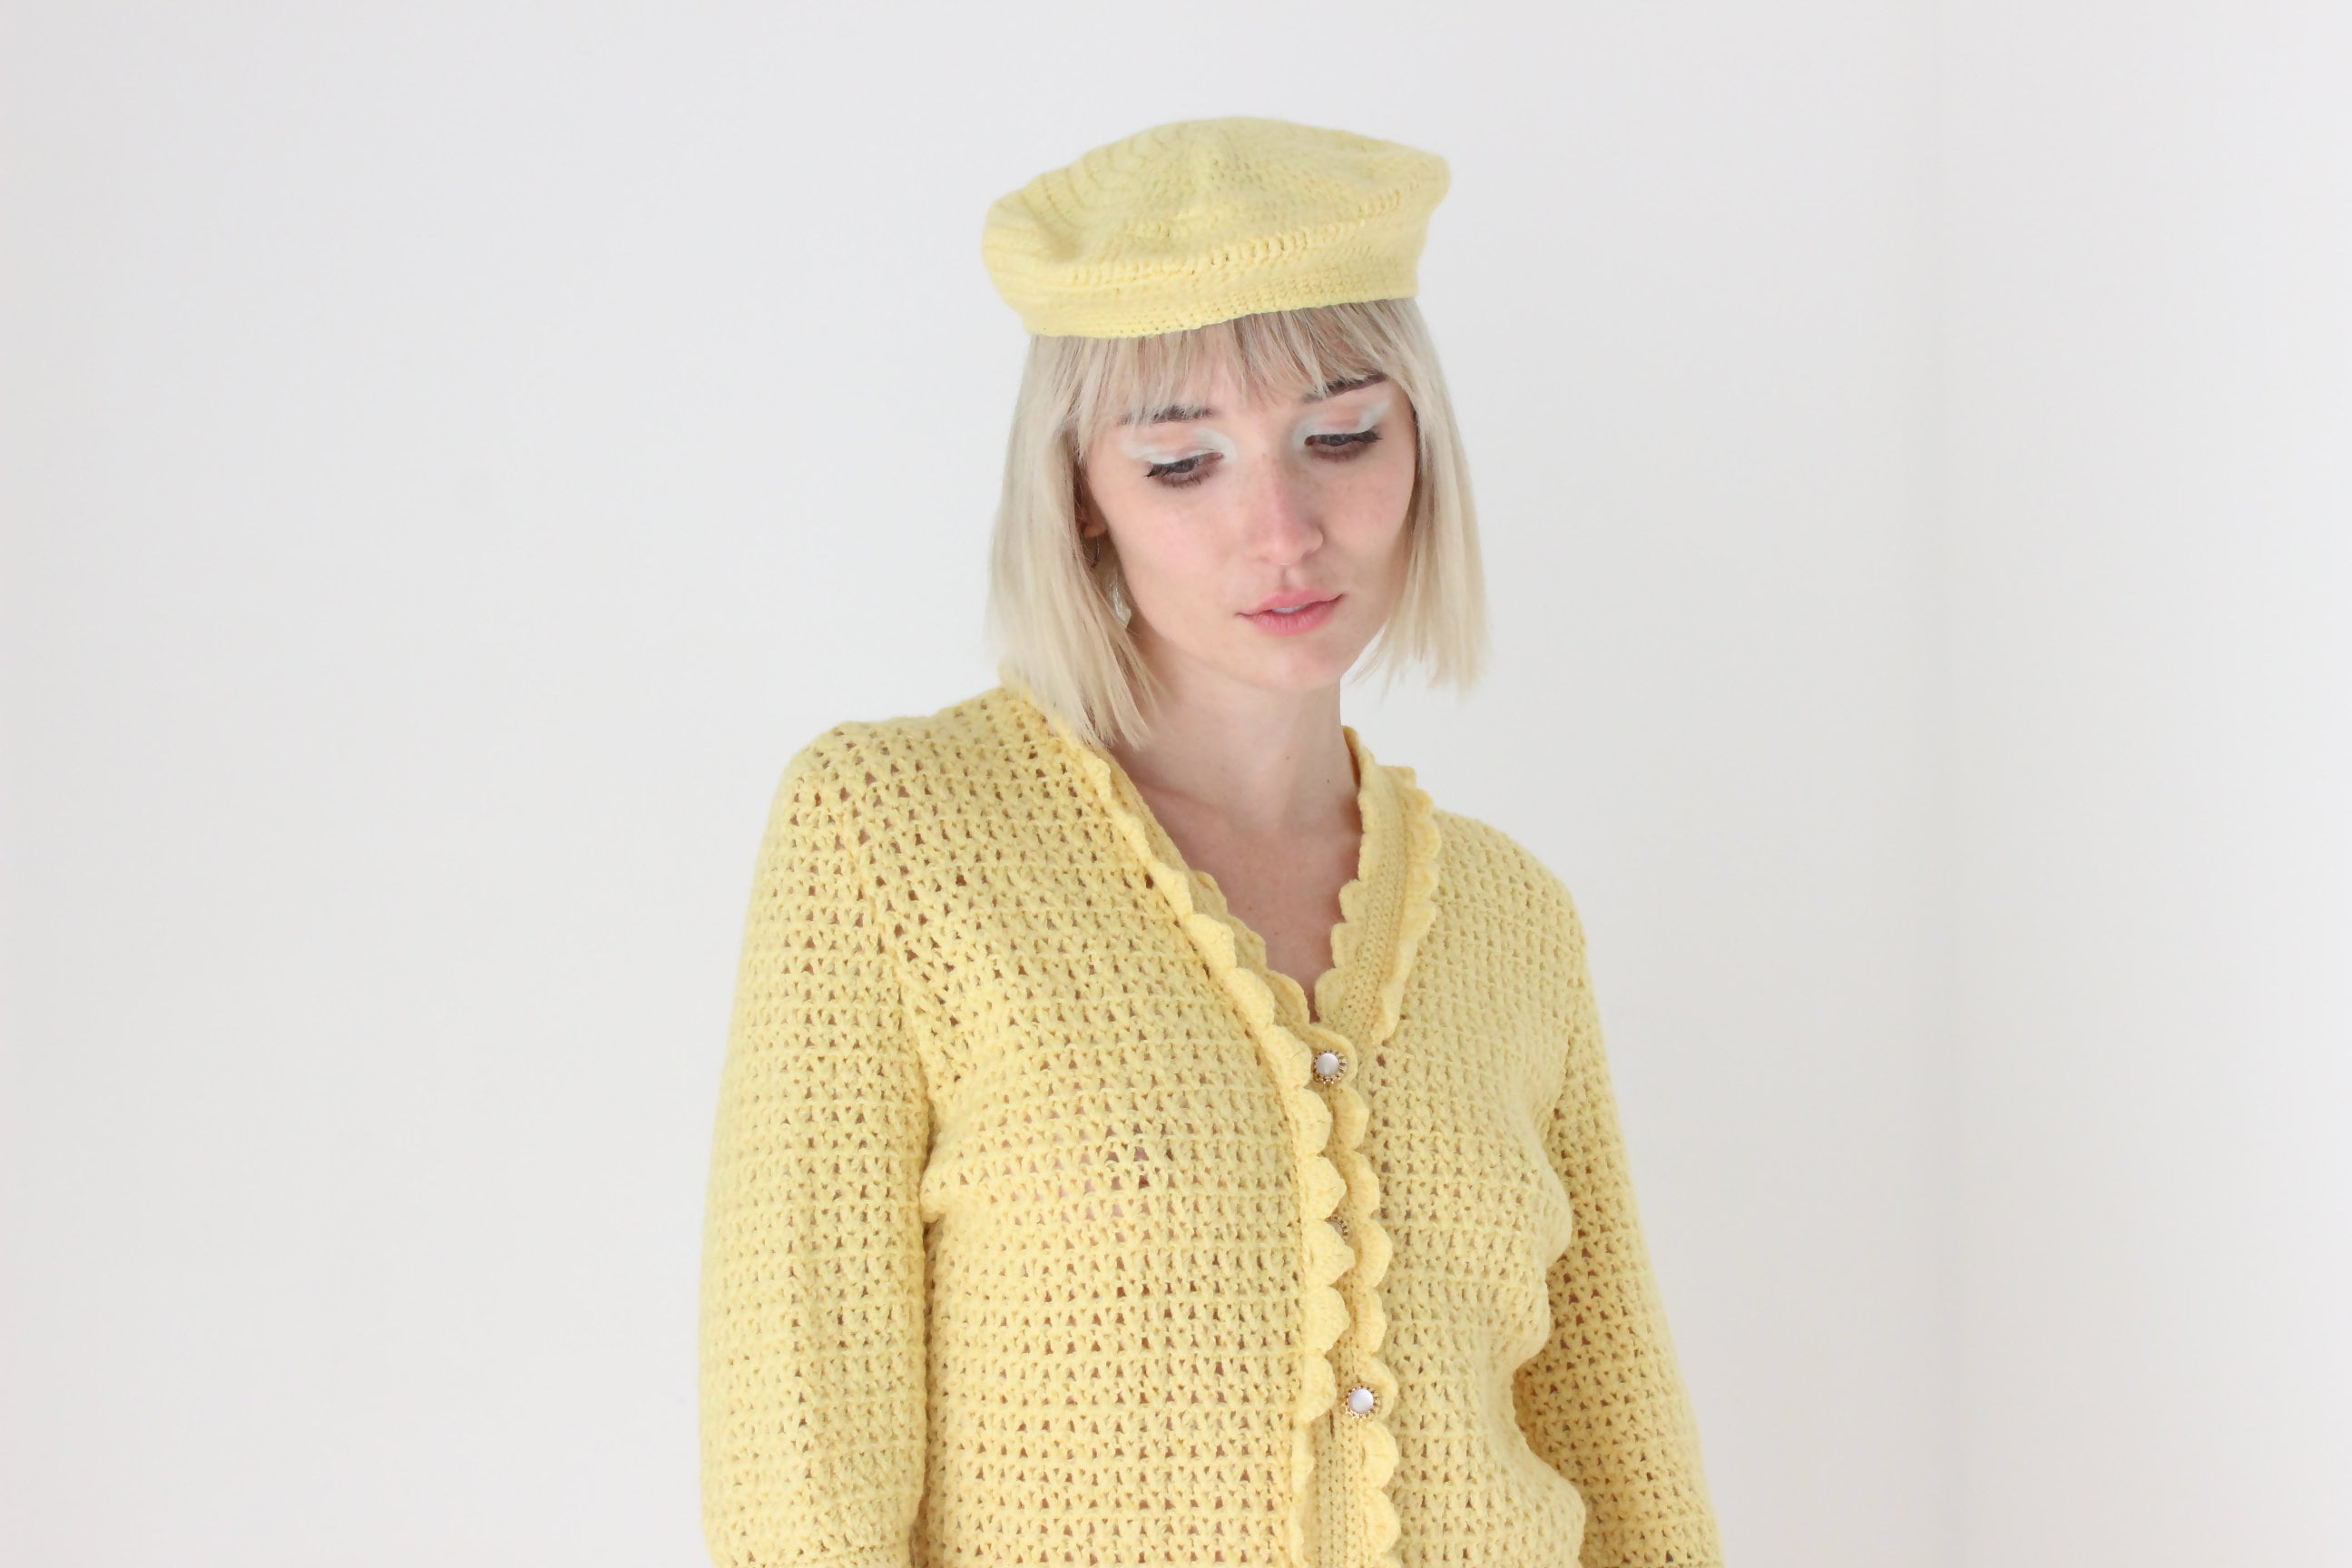 70s Hand Knit Lemon Yellow Mini Dress w/ Matching Beret